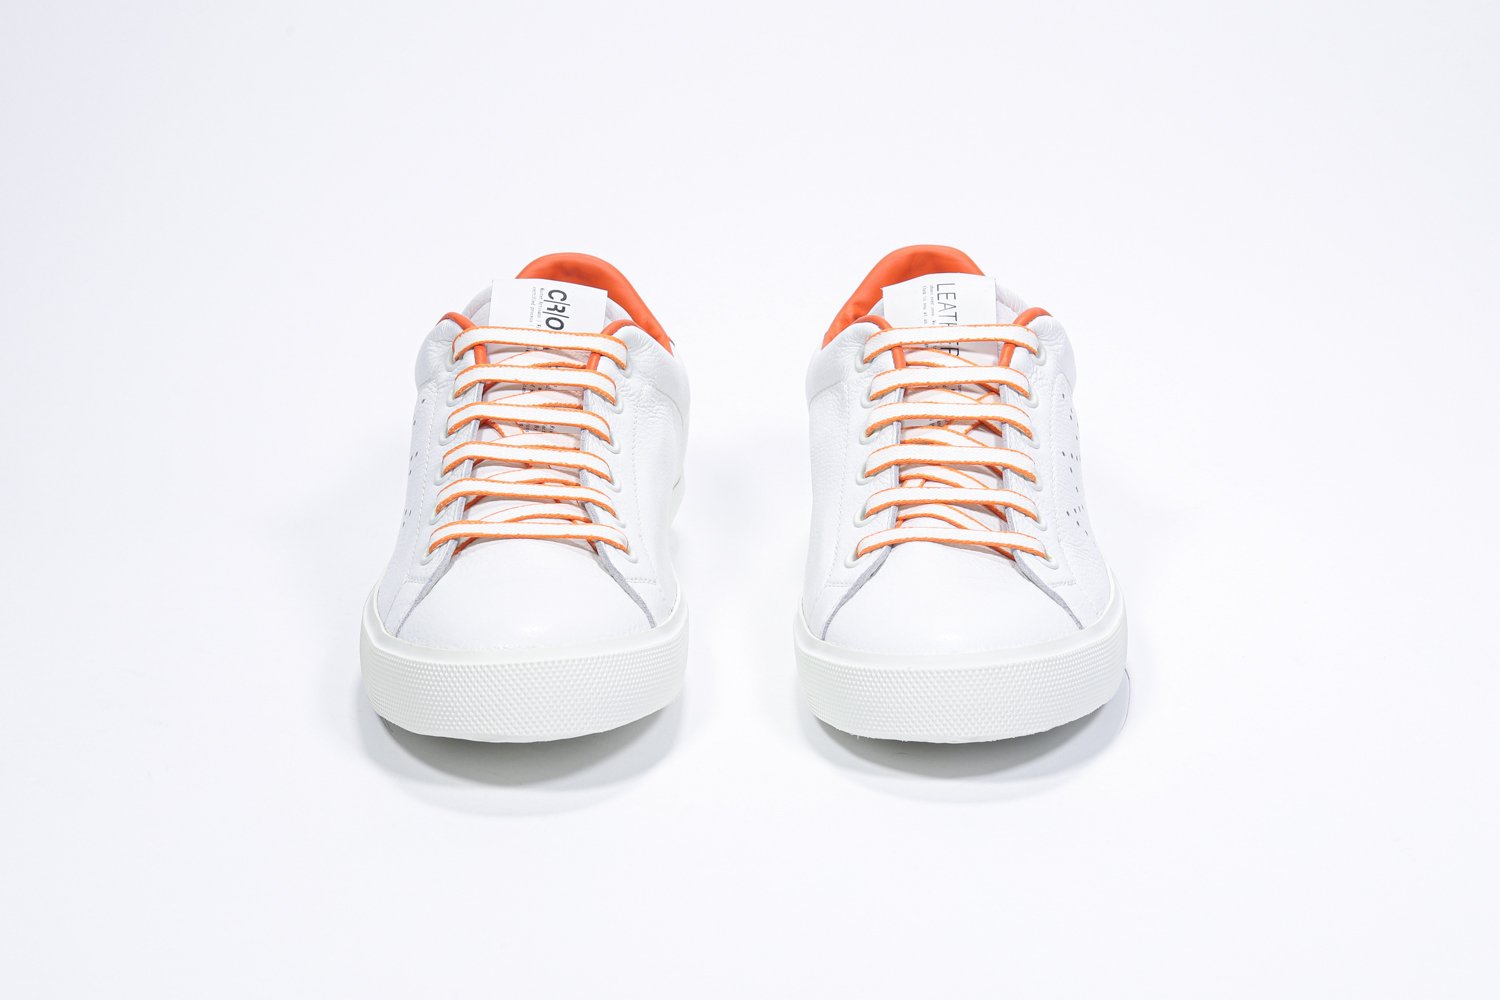 Vue de face de la chaussure blanche sneaker avec des détails orange et le logo perforé de la couronne sur la tige. Tige en cuir et semelle en caoutchouc blanc.